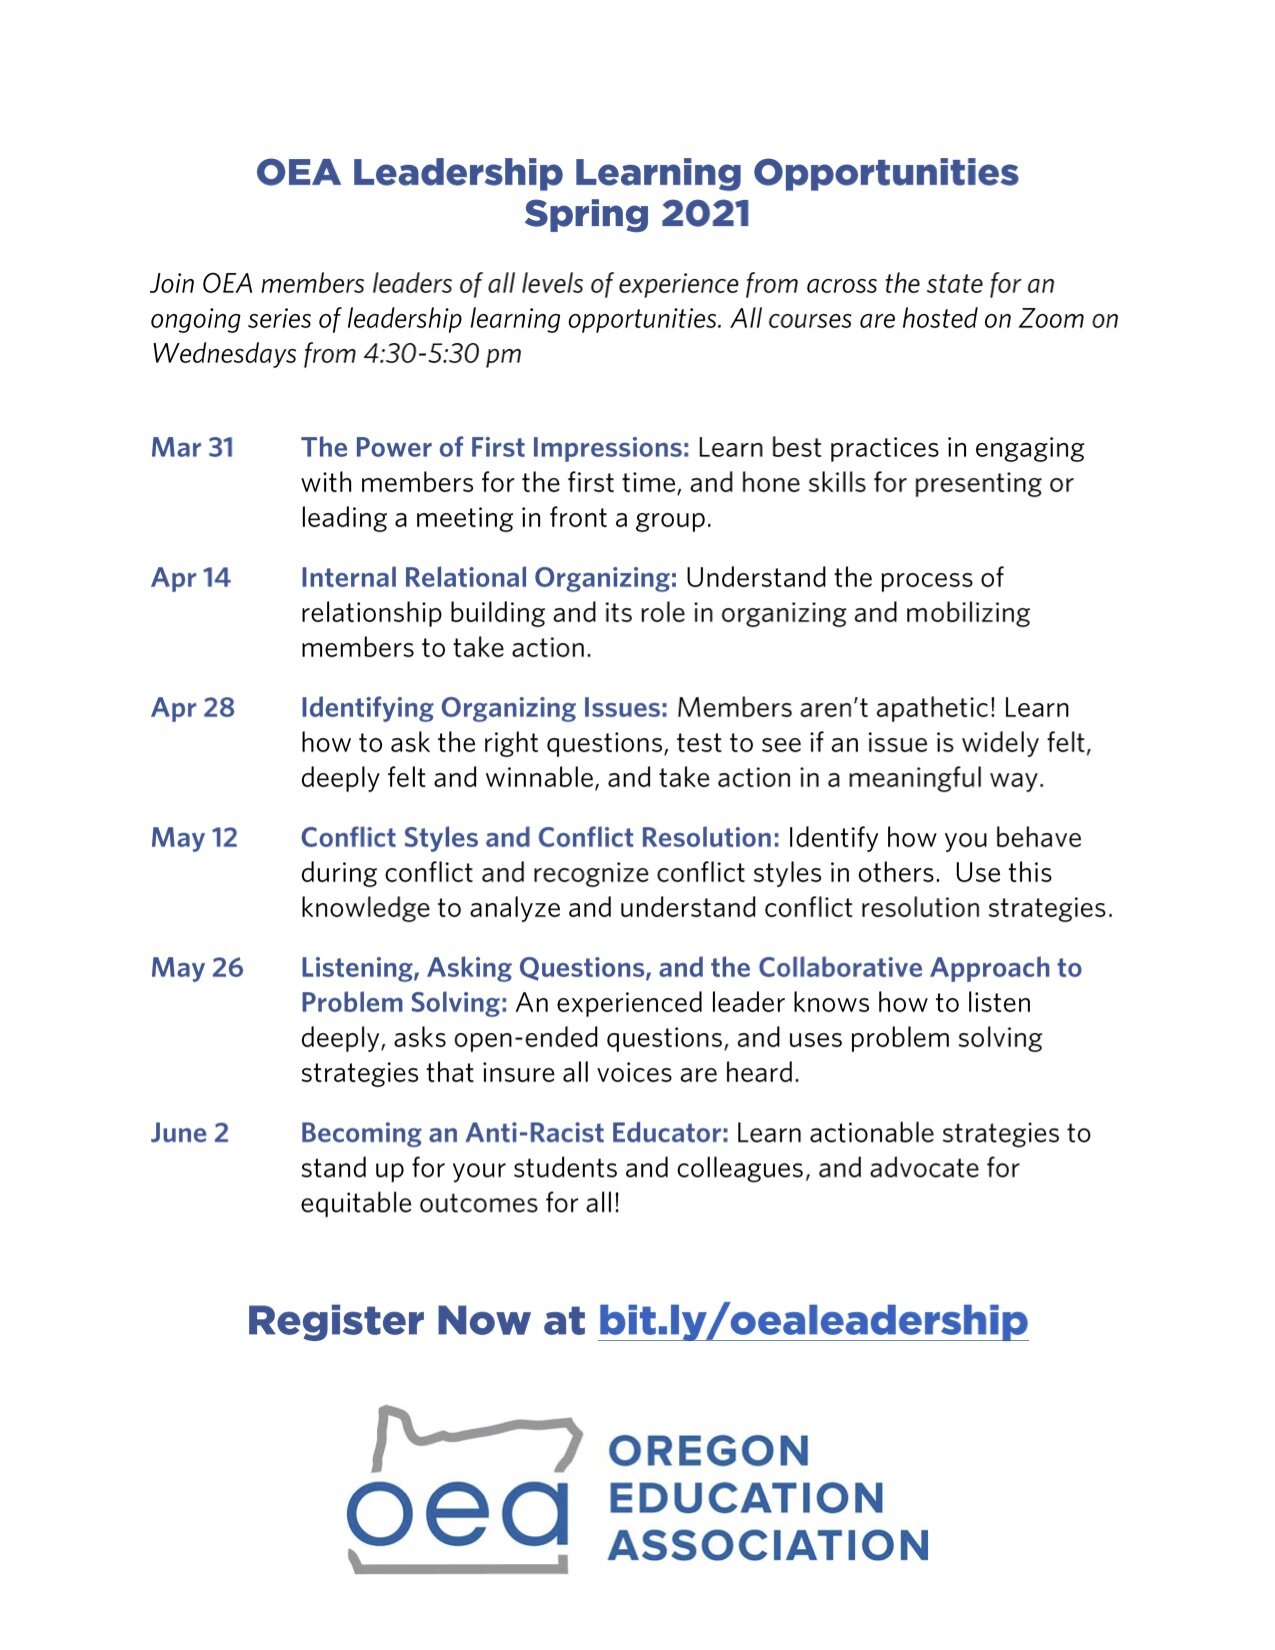 Spring OEA Leadership Learning Opportunities- flier 2.1.jpg